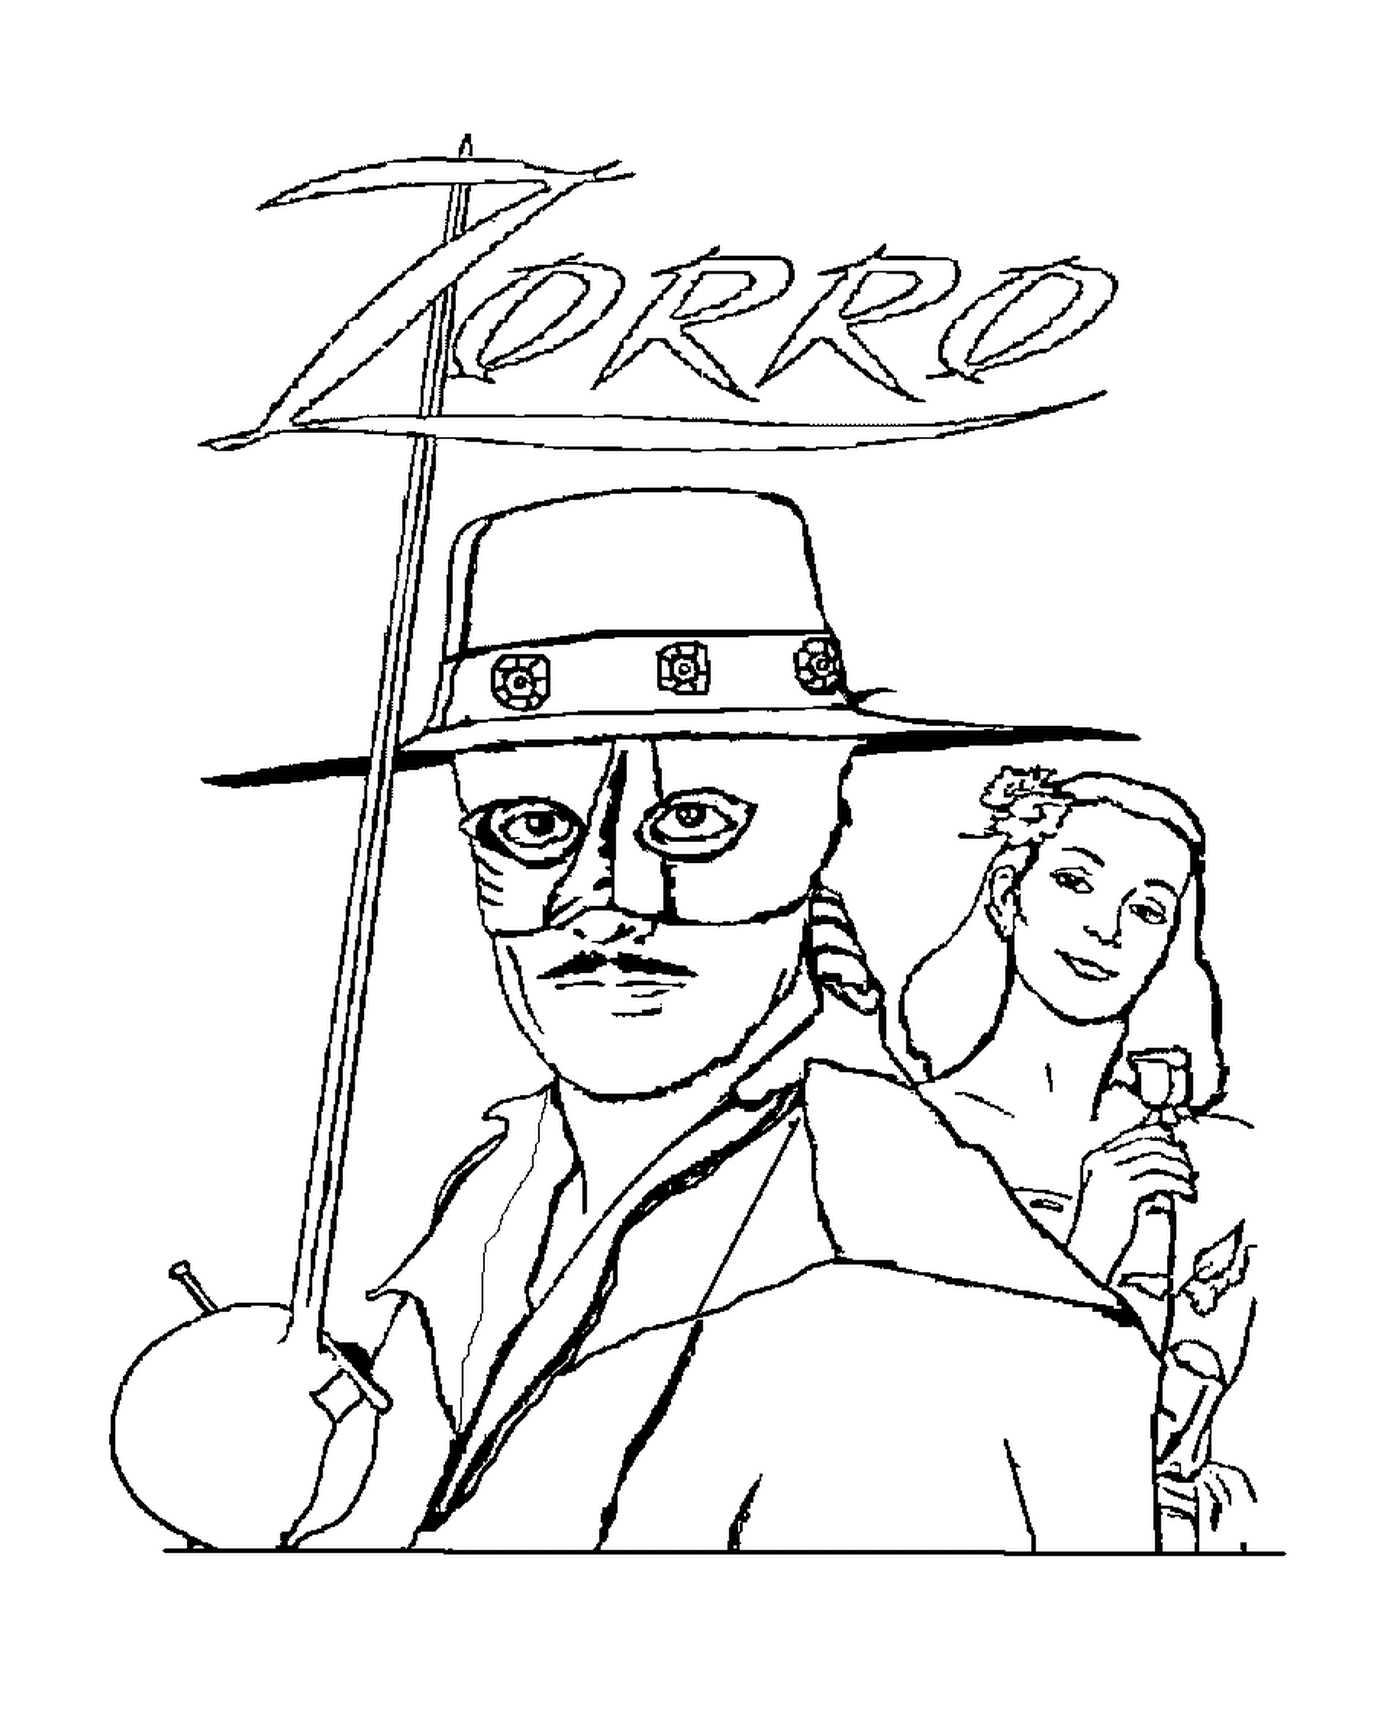  Zorro el vigilante enmascarado y un hombre 